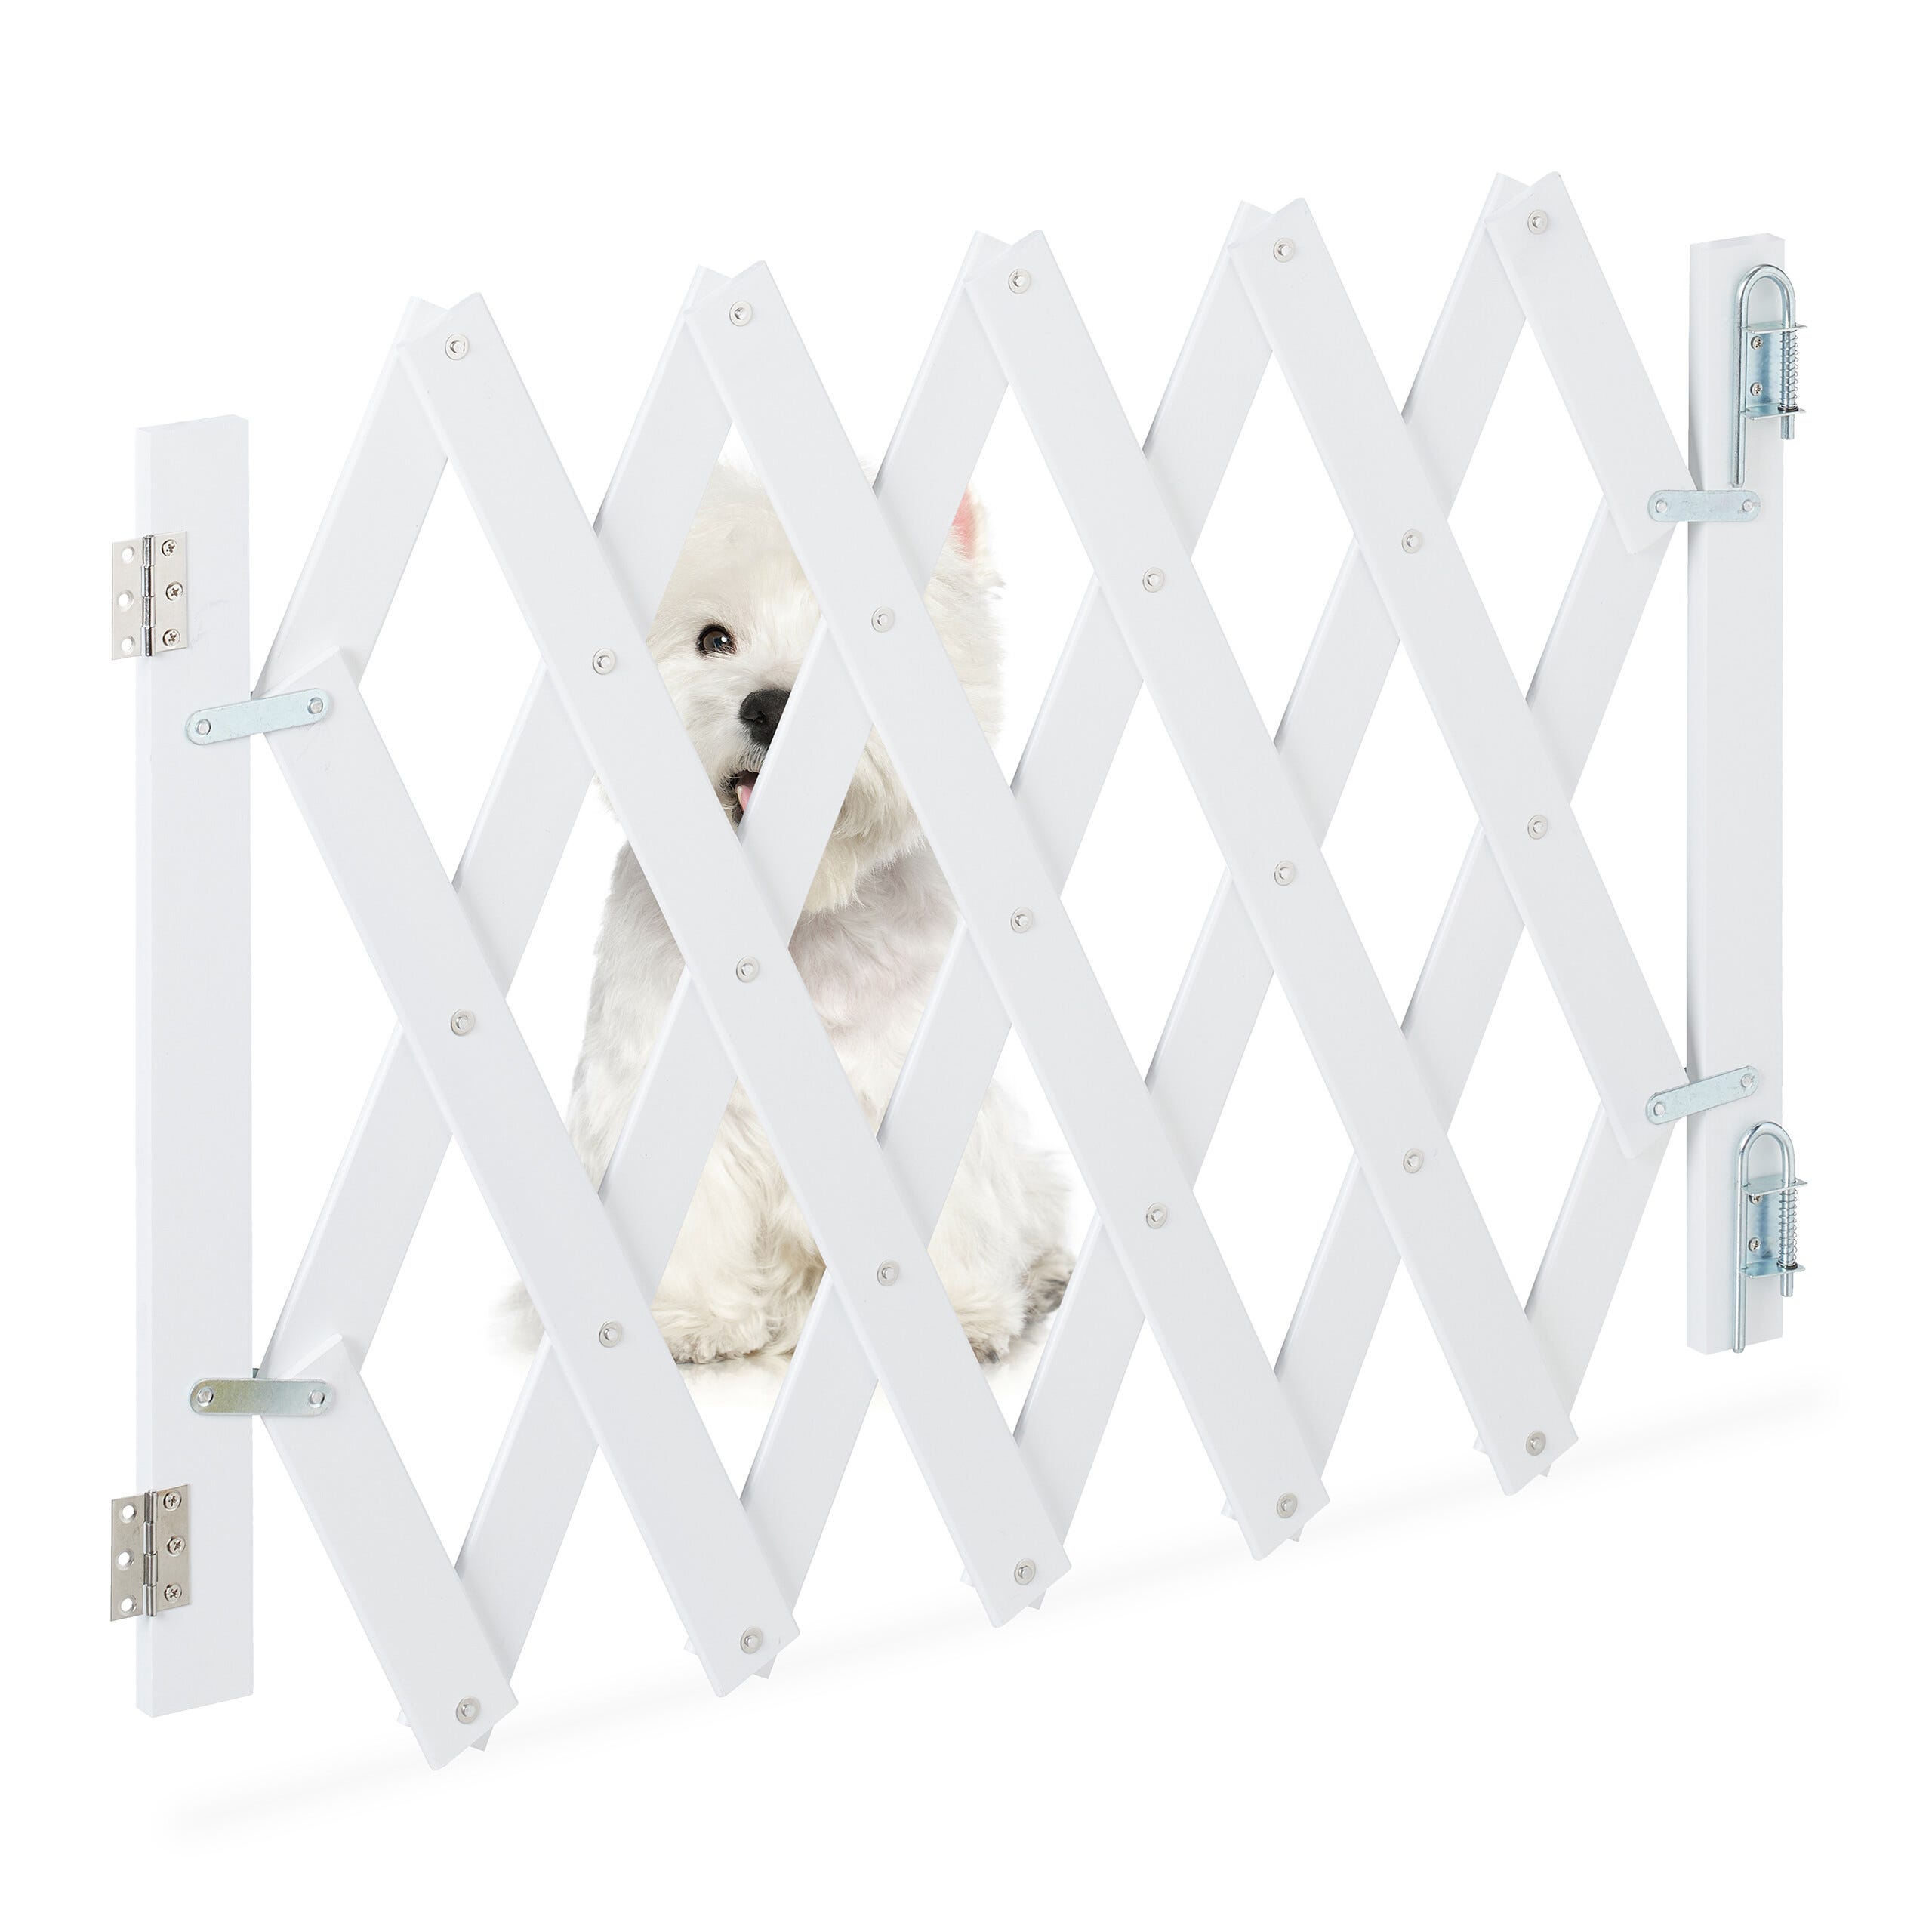 Relaxdays Barrière pour chien, de Protection pour portes et escalier, en  ciseaux extensible jusqu'à 116,5 cm, 82,5cm h